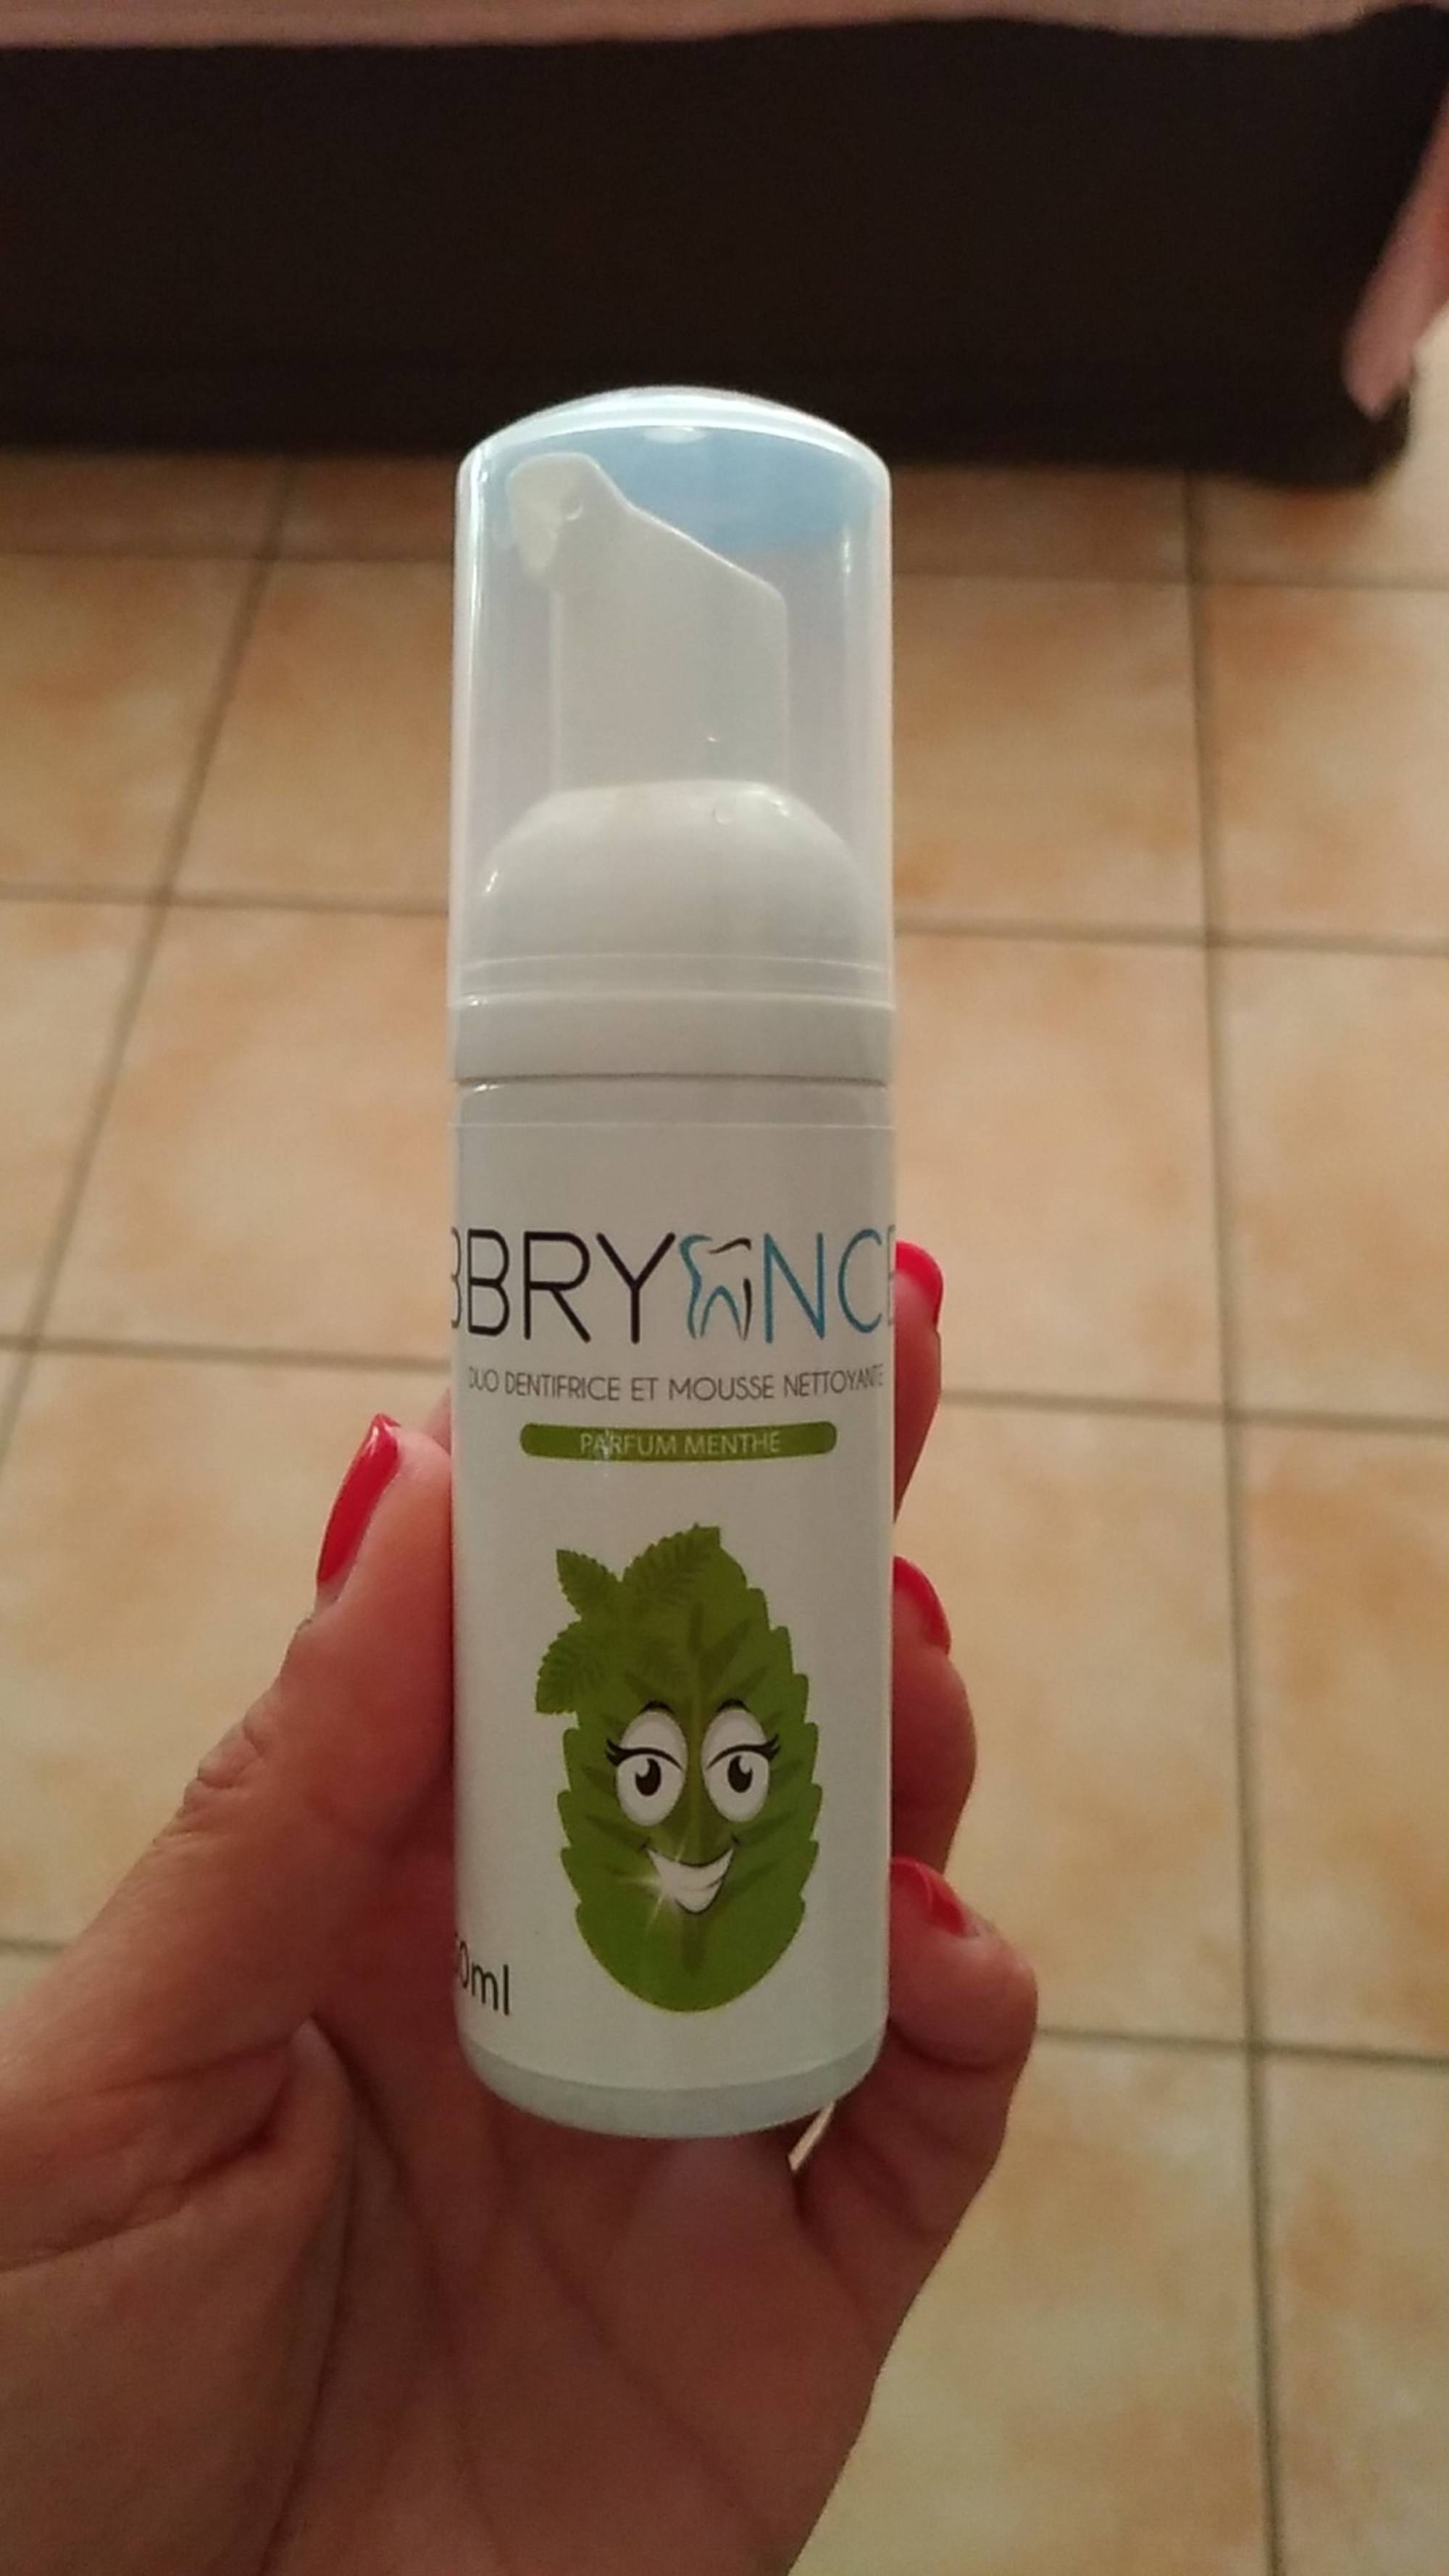 BBRYANCE - Parfum menthe - Duo dentifrice et mousse nettoyante 